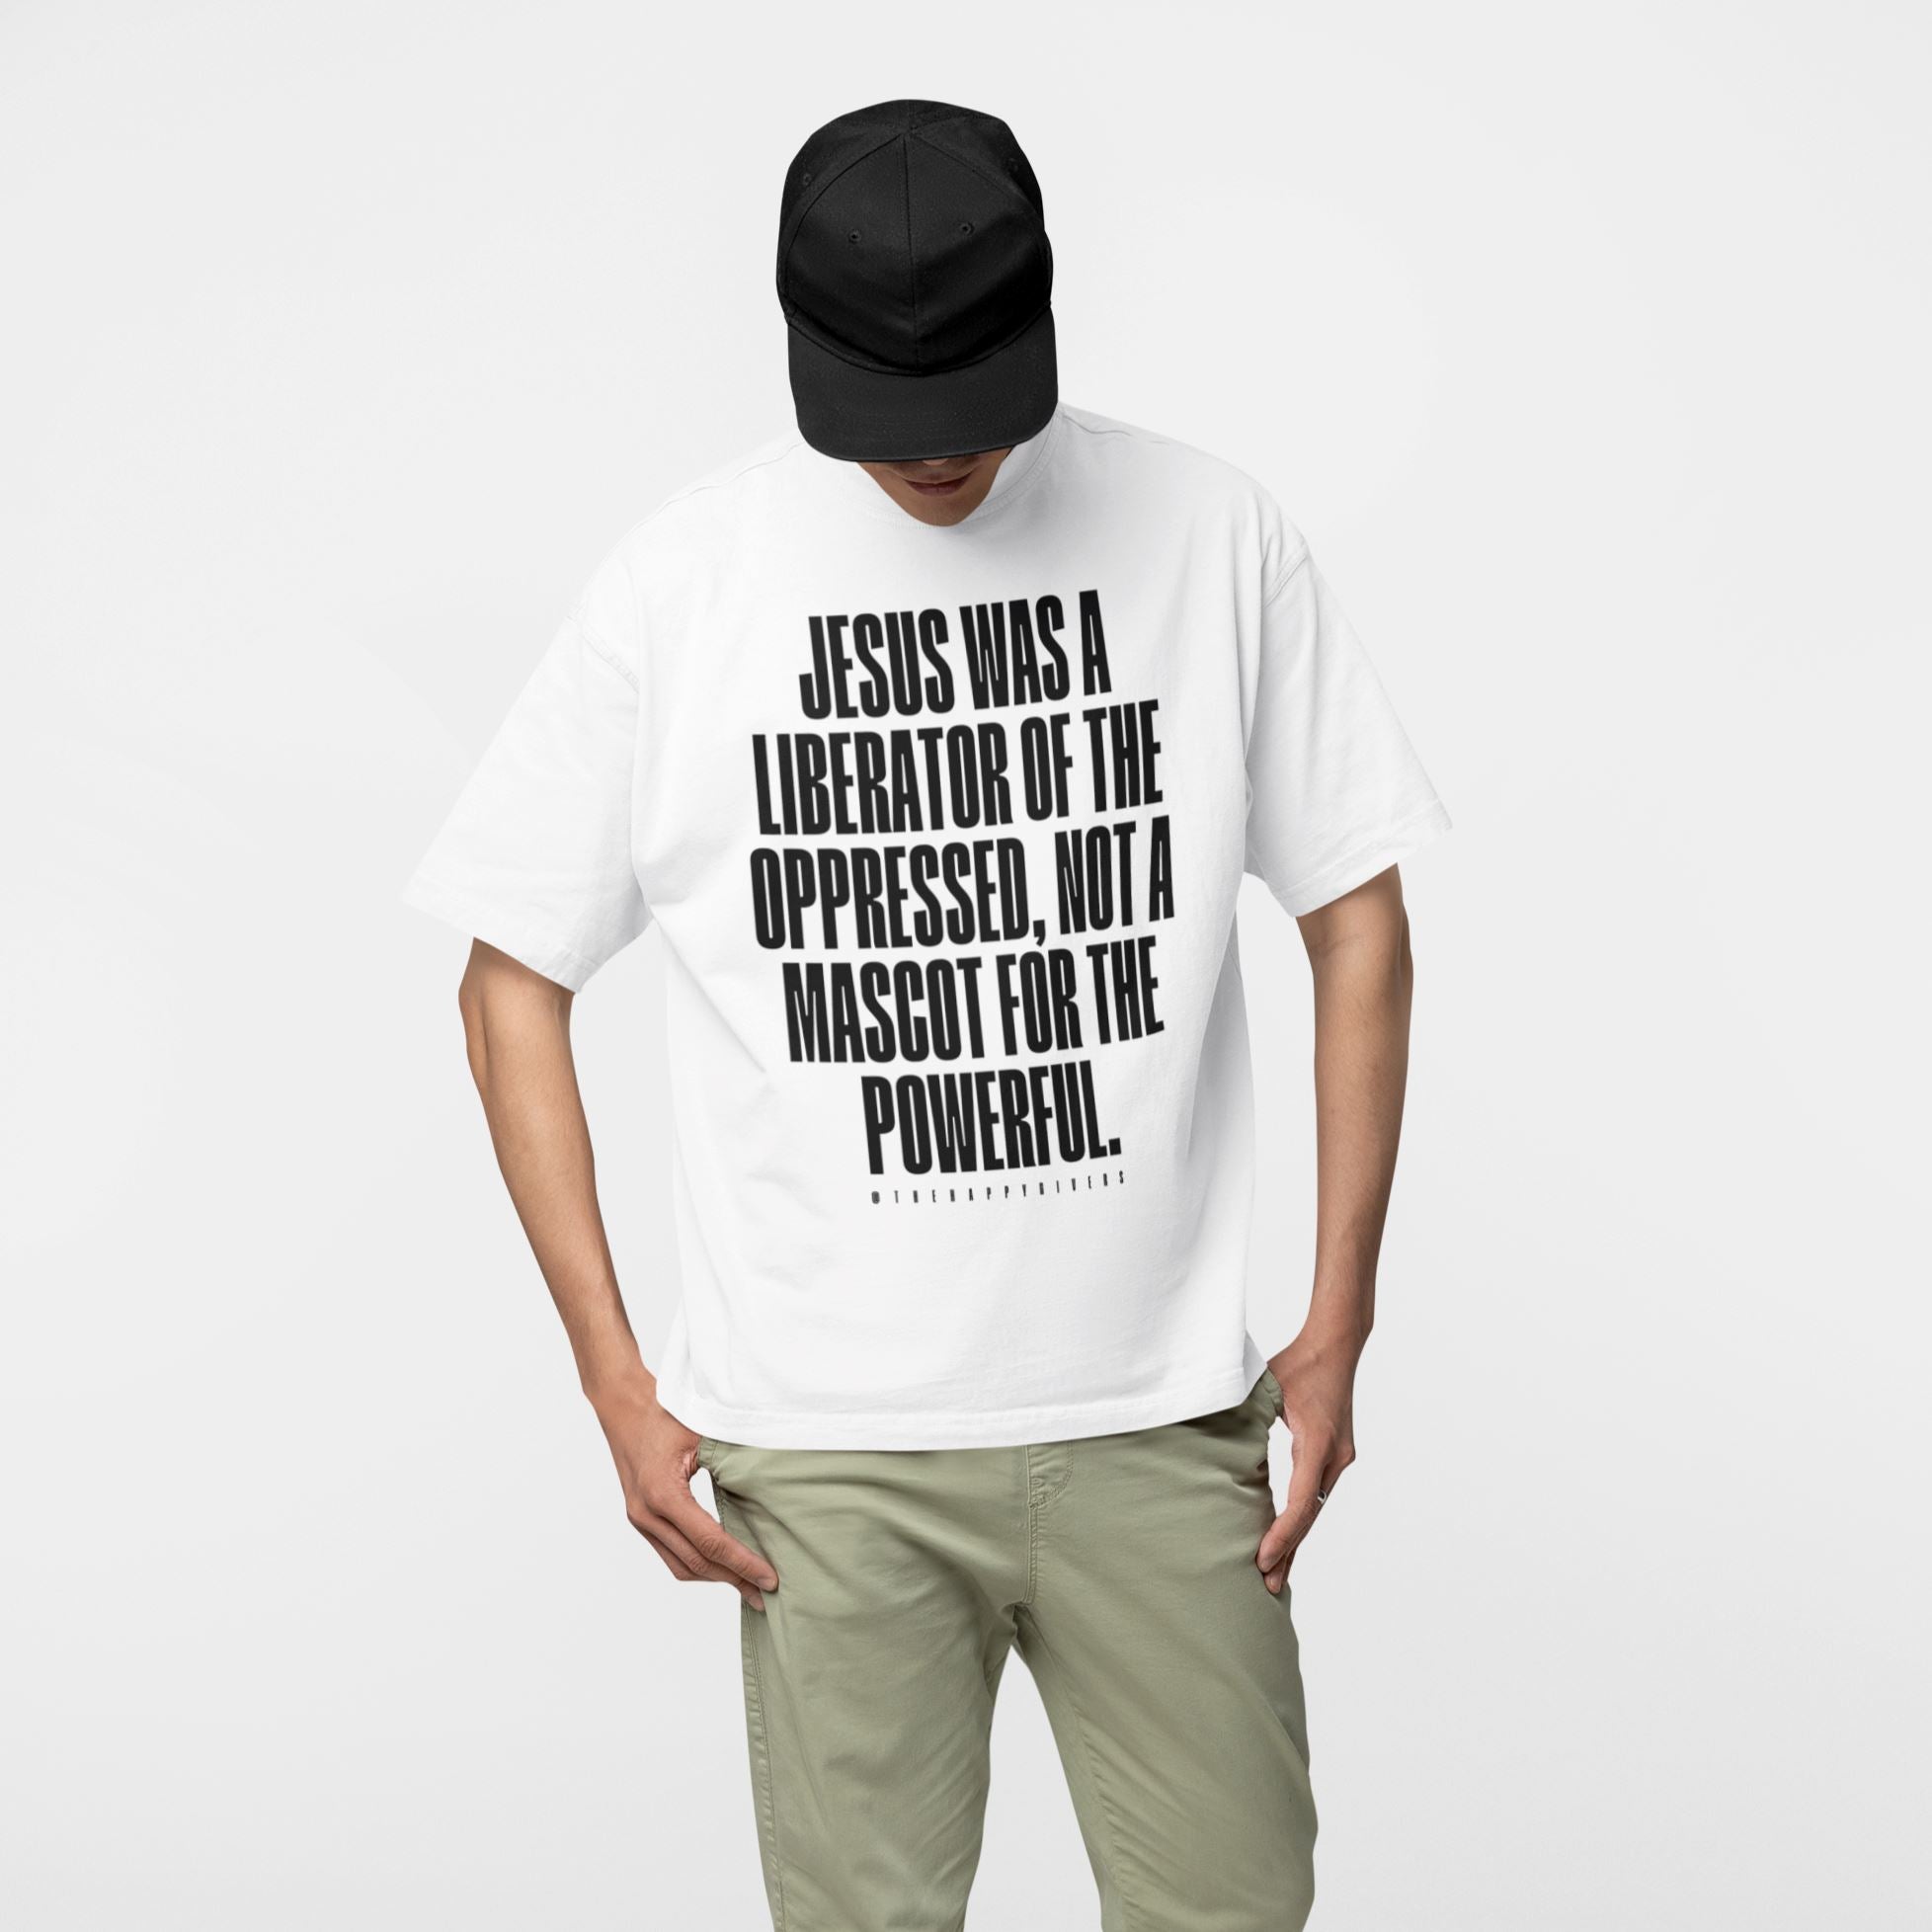 Sea amable | Camiseta de manga corta unisex (varios colores)